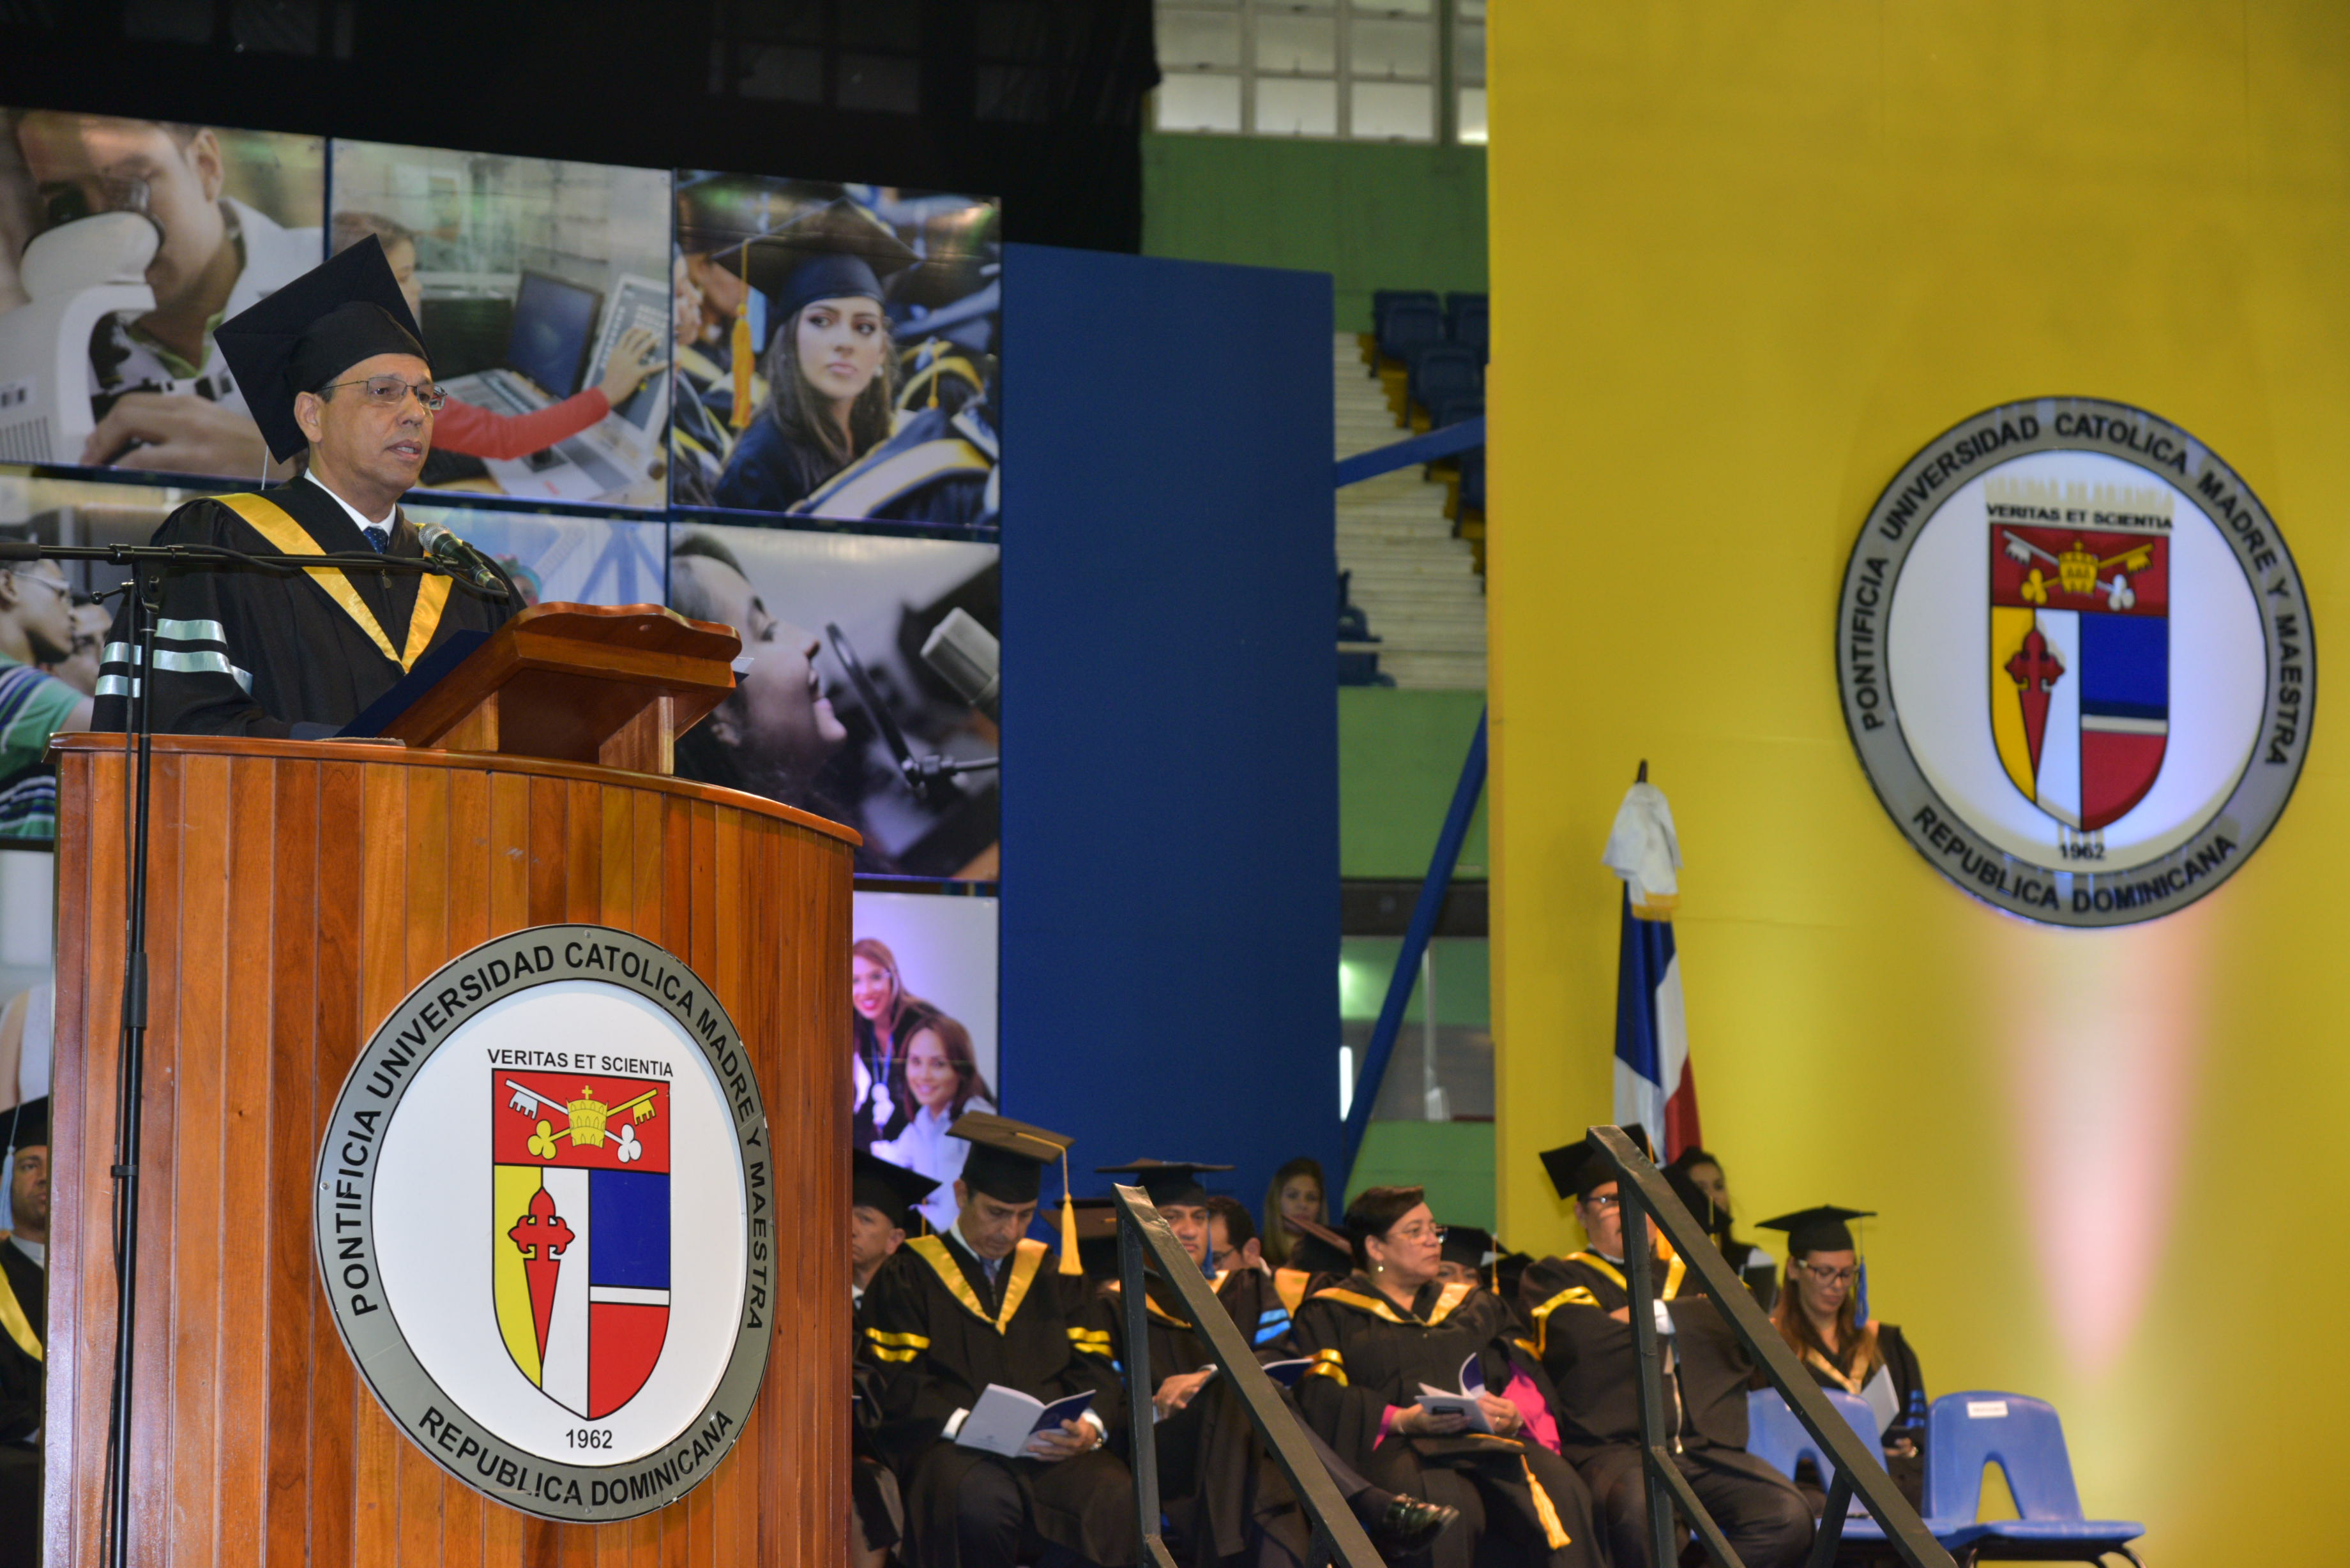  imagen Ministro de Educación, Antonio Peña Mirabal, como orador invitado en la Sexagésima Graduación de la Pontificia Universidad Católica Madre y Maestra.  